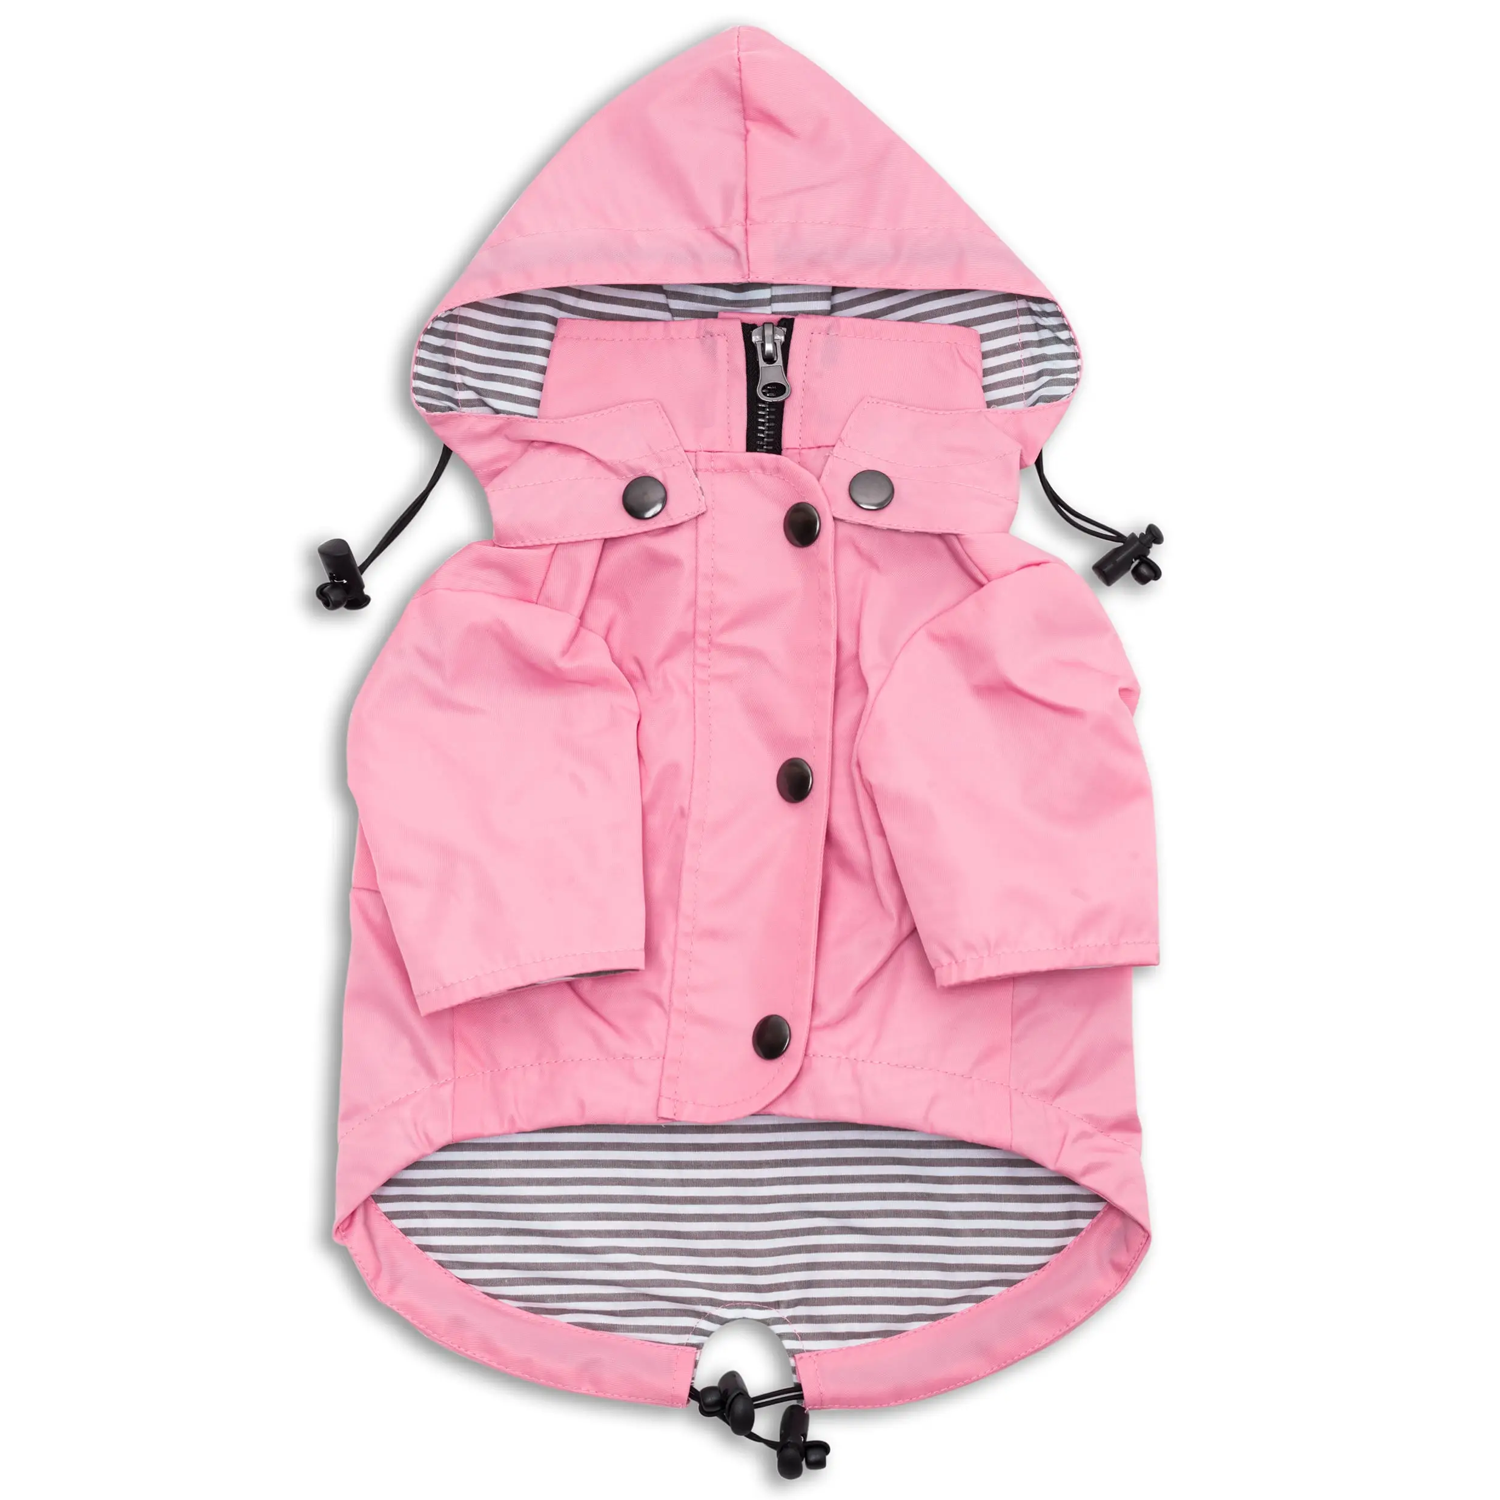 Dog Raincoat - Light Pink Dog Raincoat